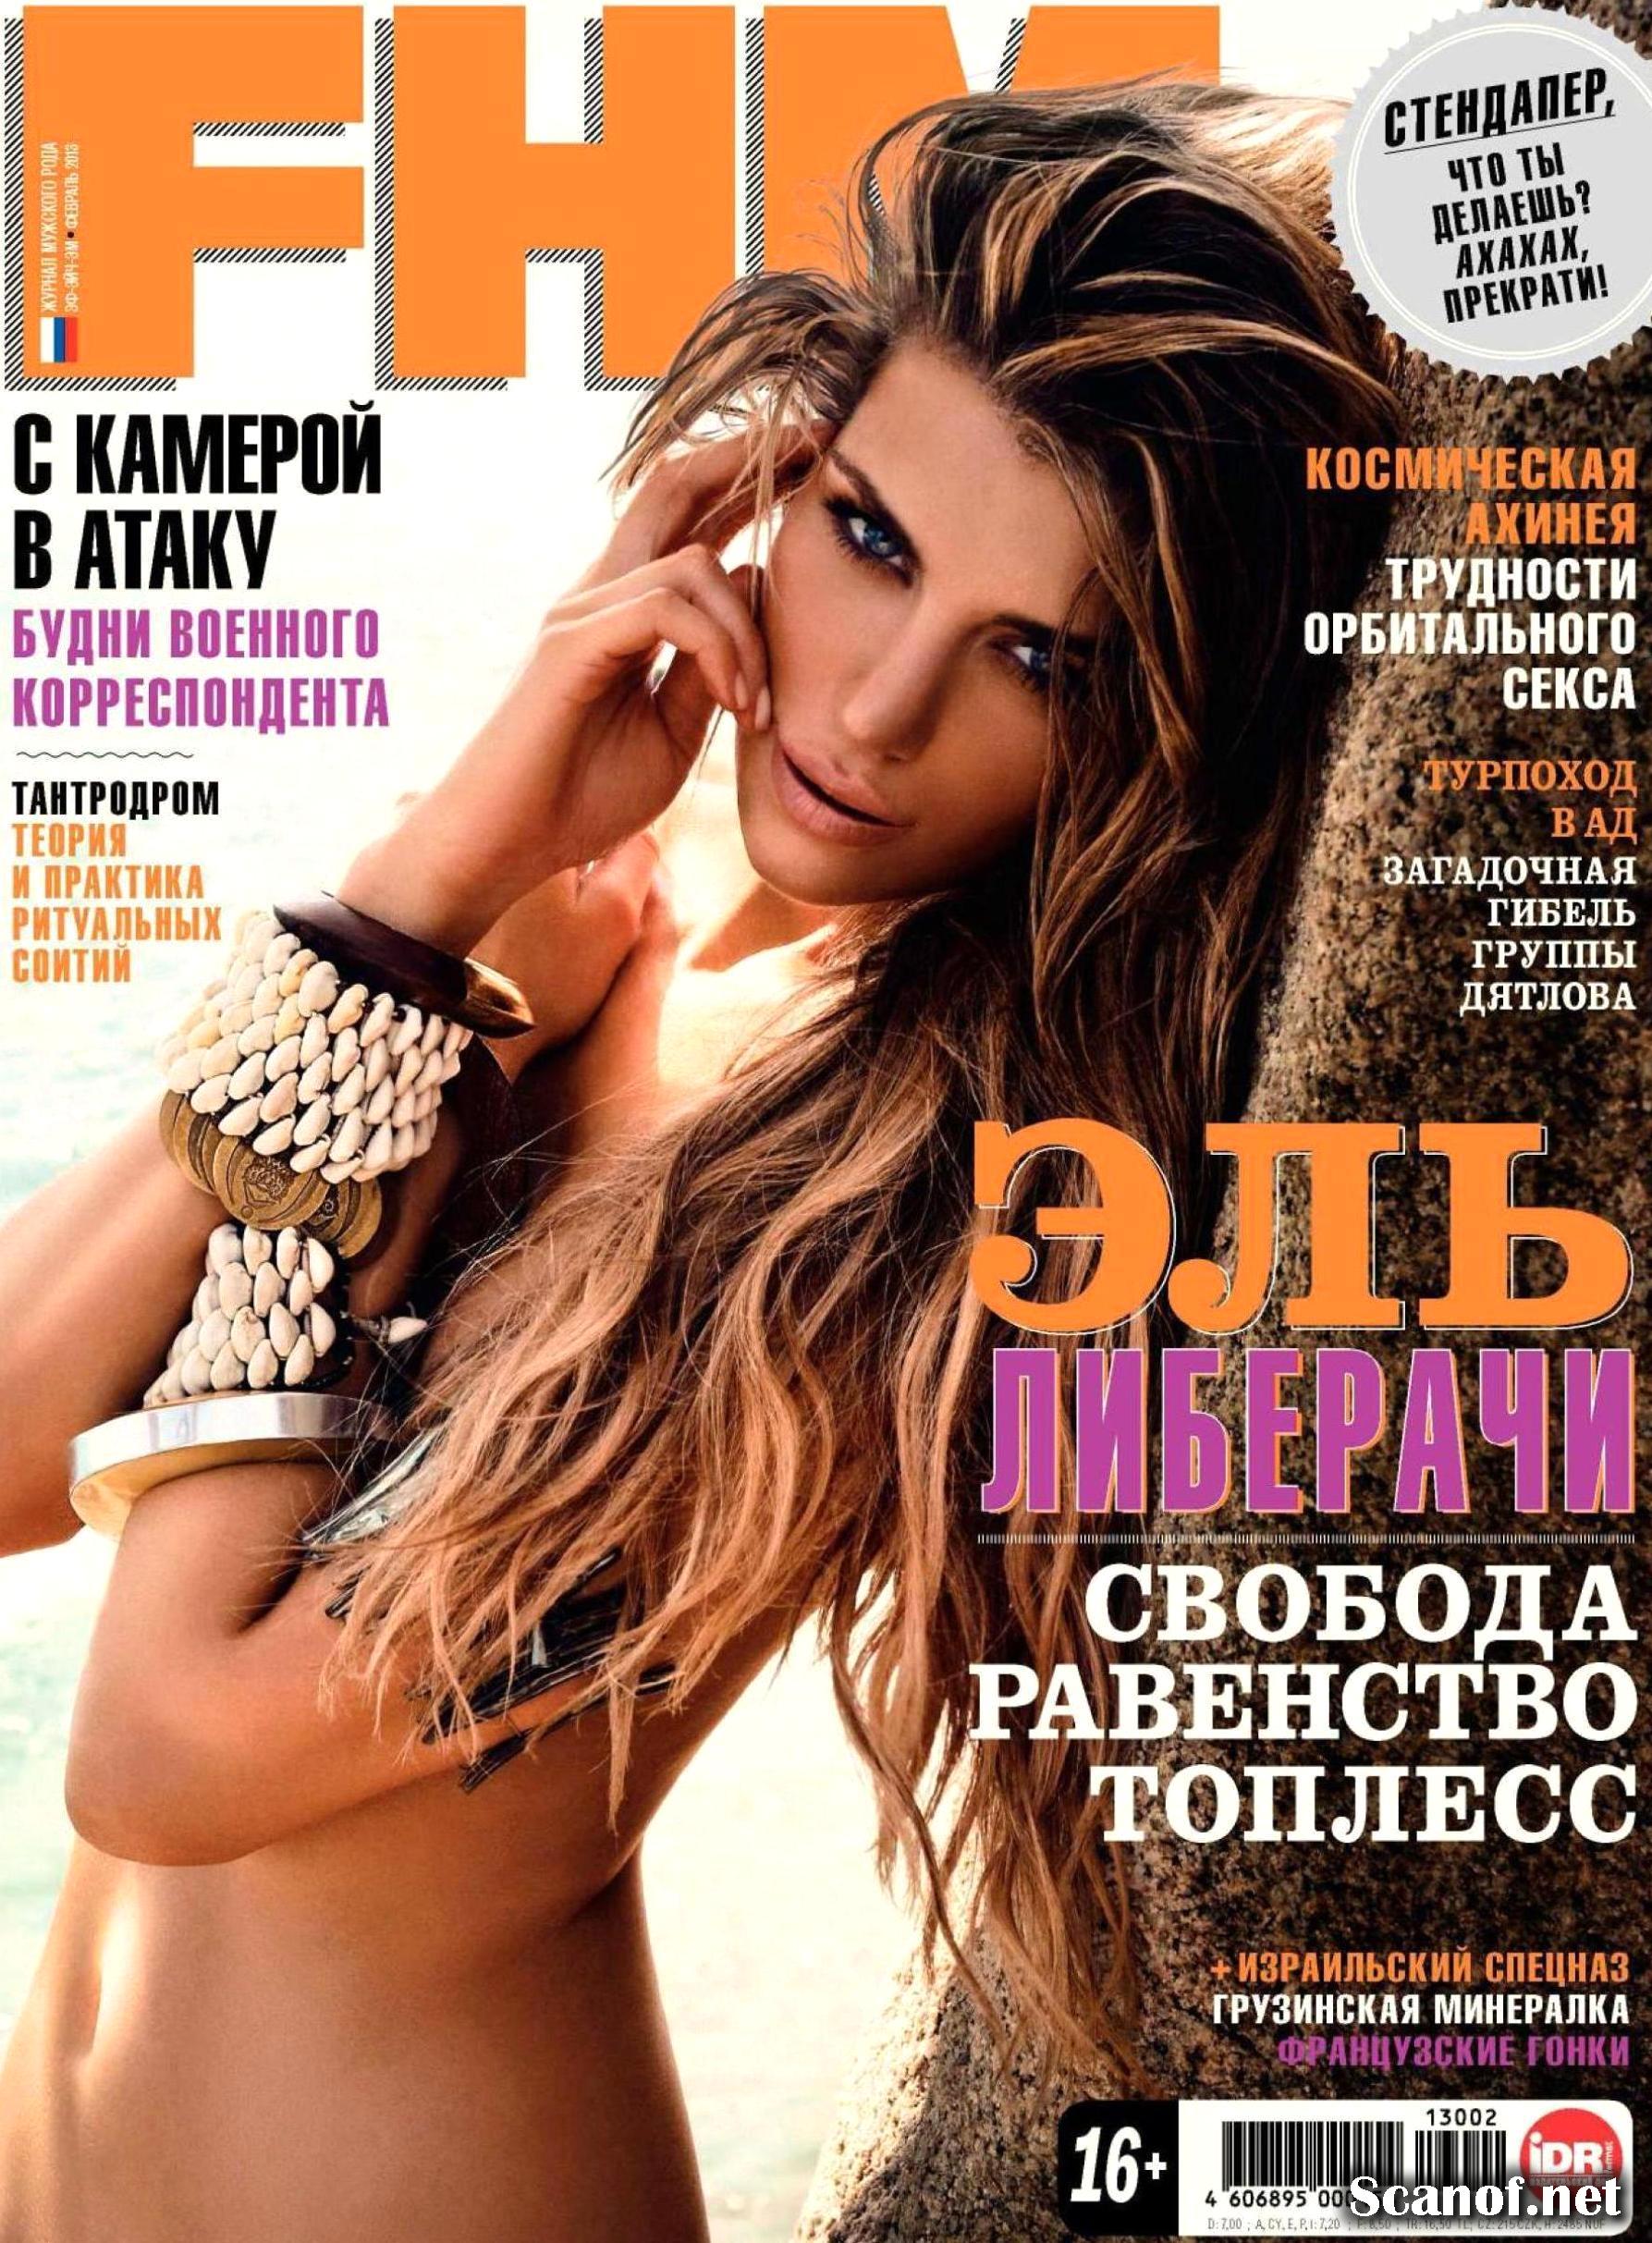 Elle Liberachi for FHM Magazine Russia